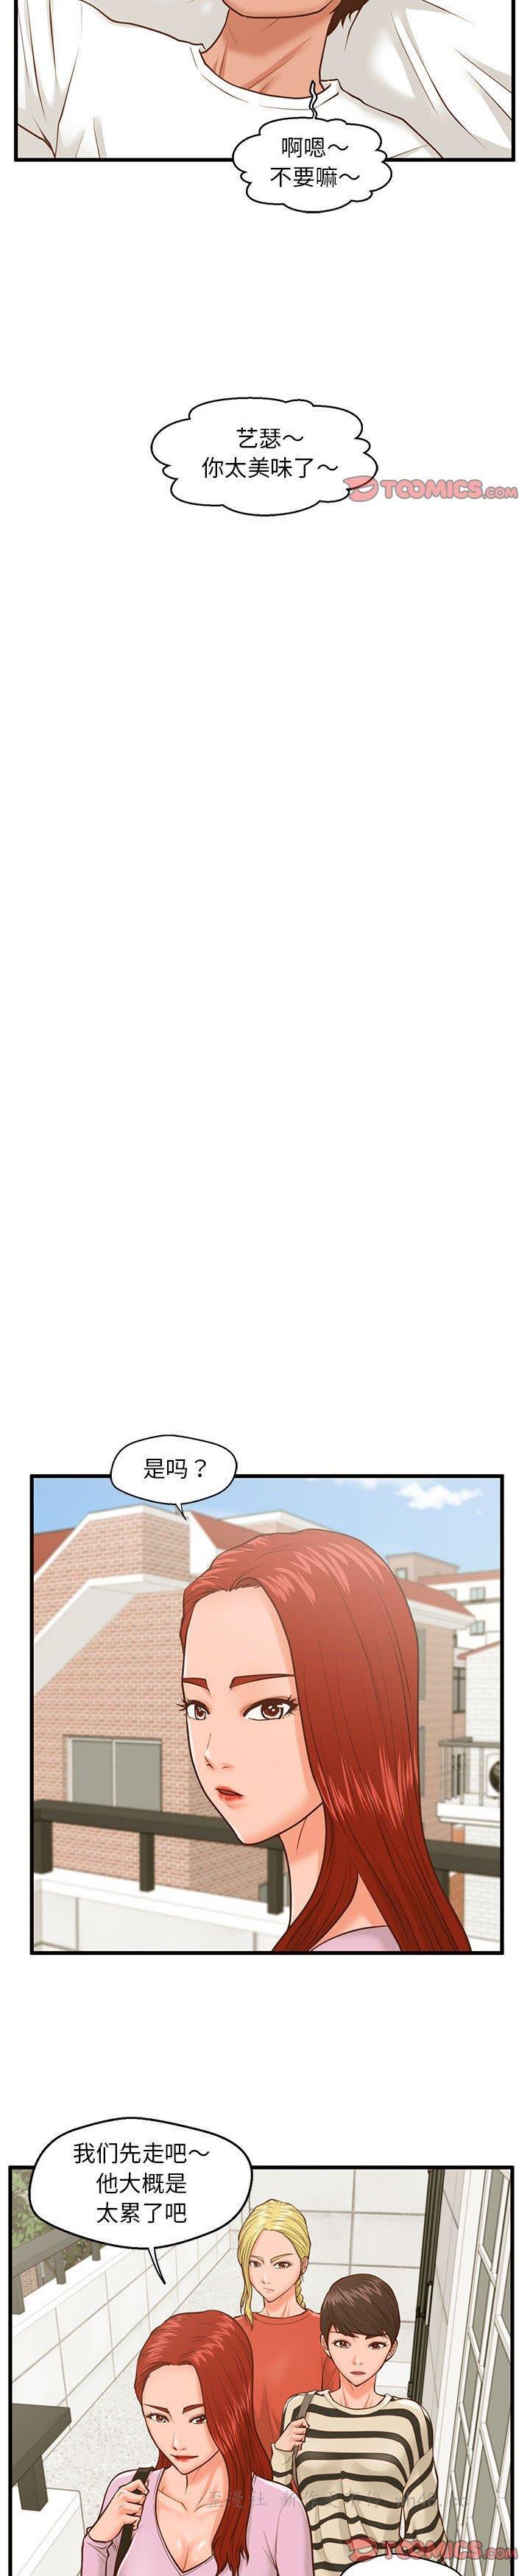 《诚徵女房客(甜蜜合租)》漫画 第9话